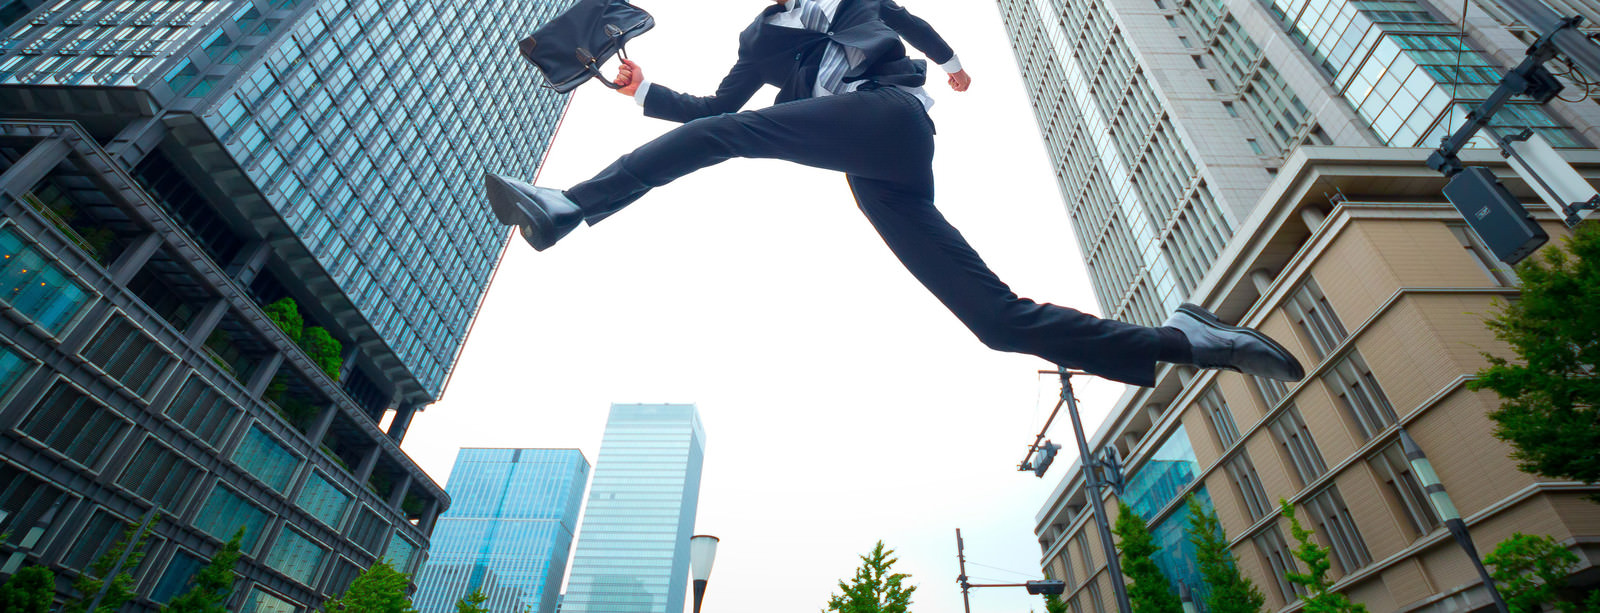 「ジャンプするビジネスマンジャンプするビジネスマン」［モデル：川崎大洋］のフリー写真素材を拡大